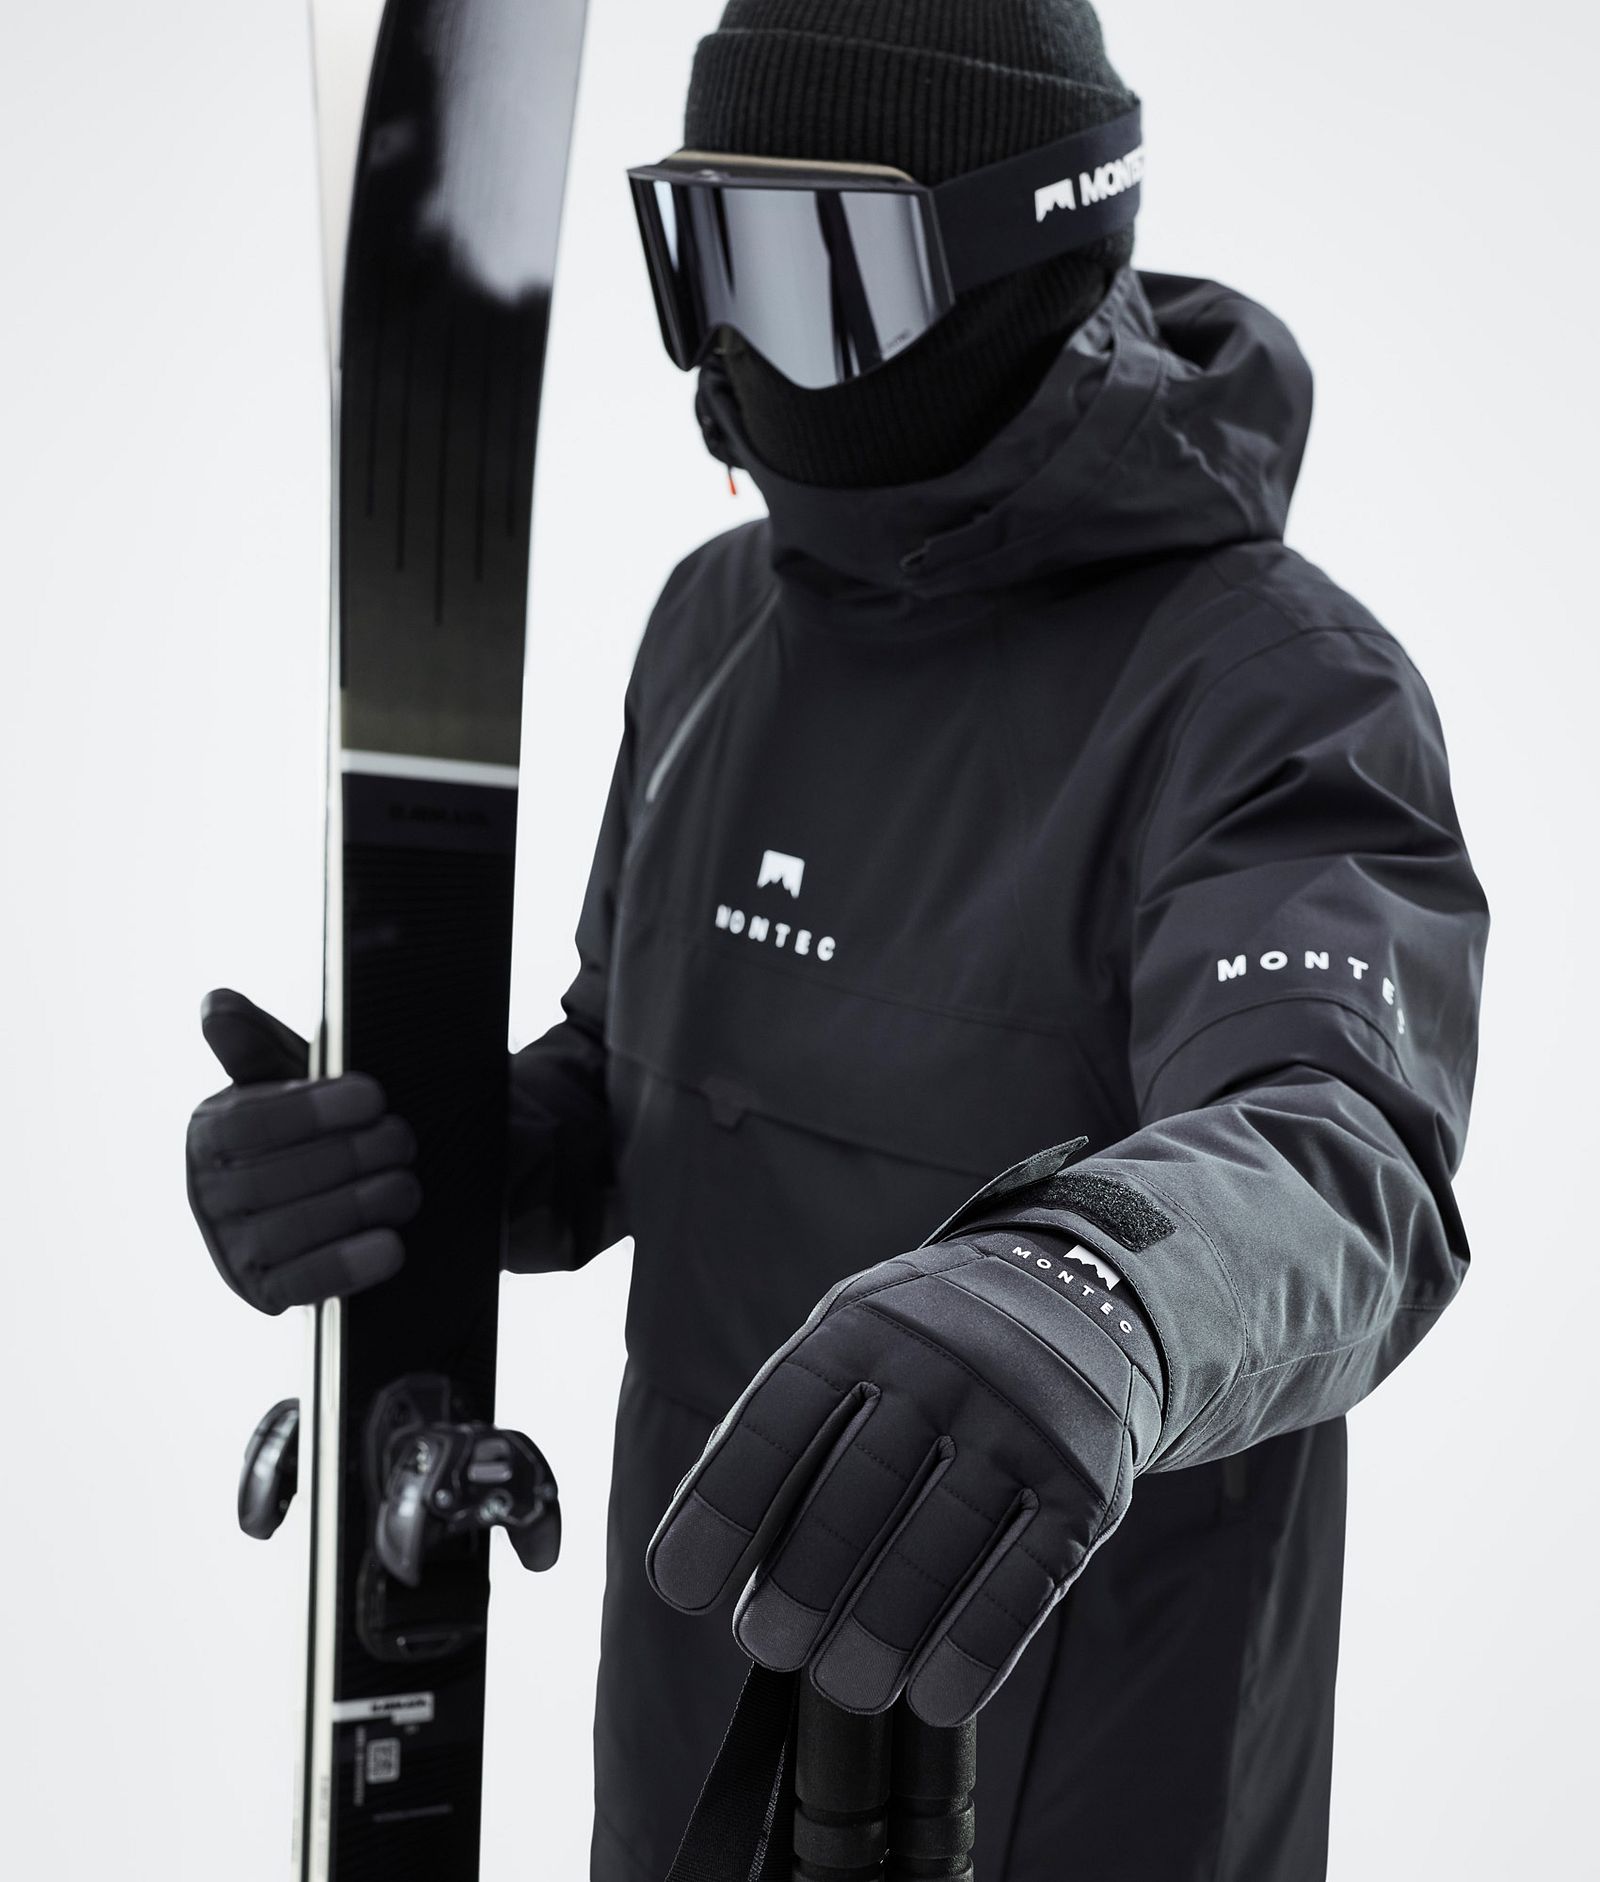 Kilo 2022 Ski Gloves Black